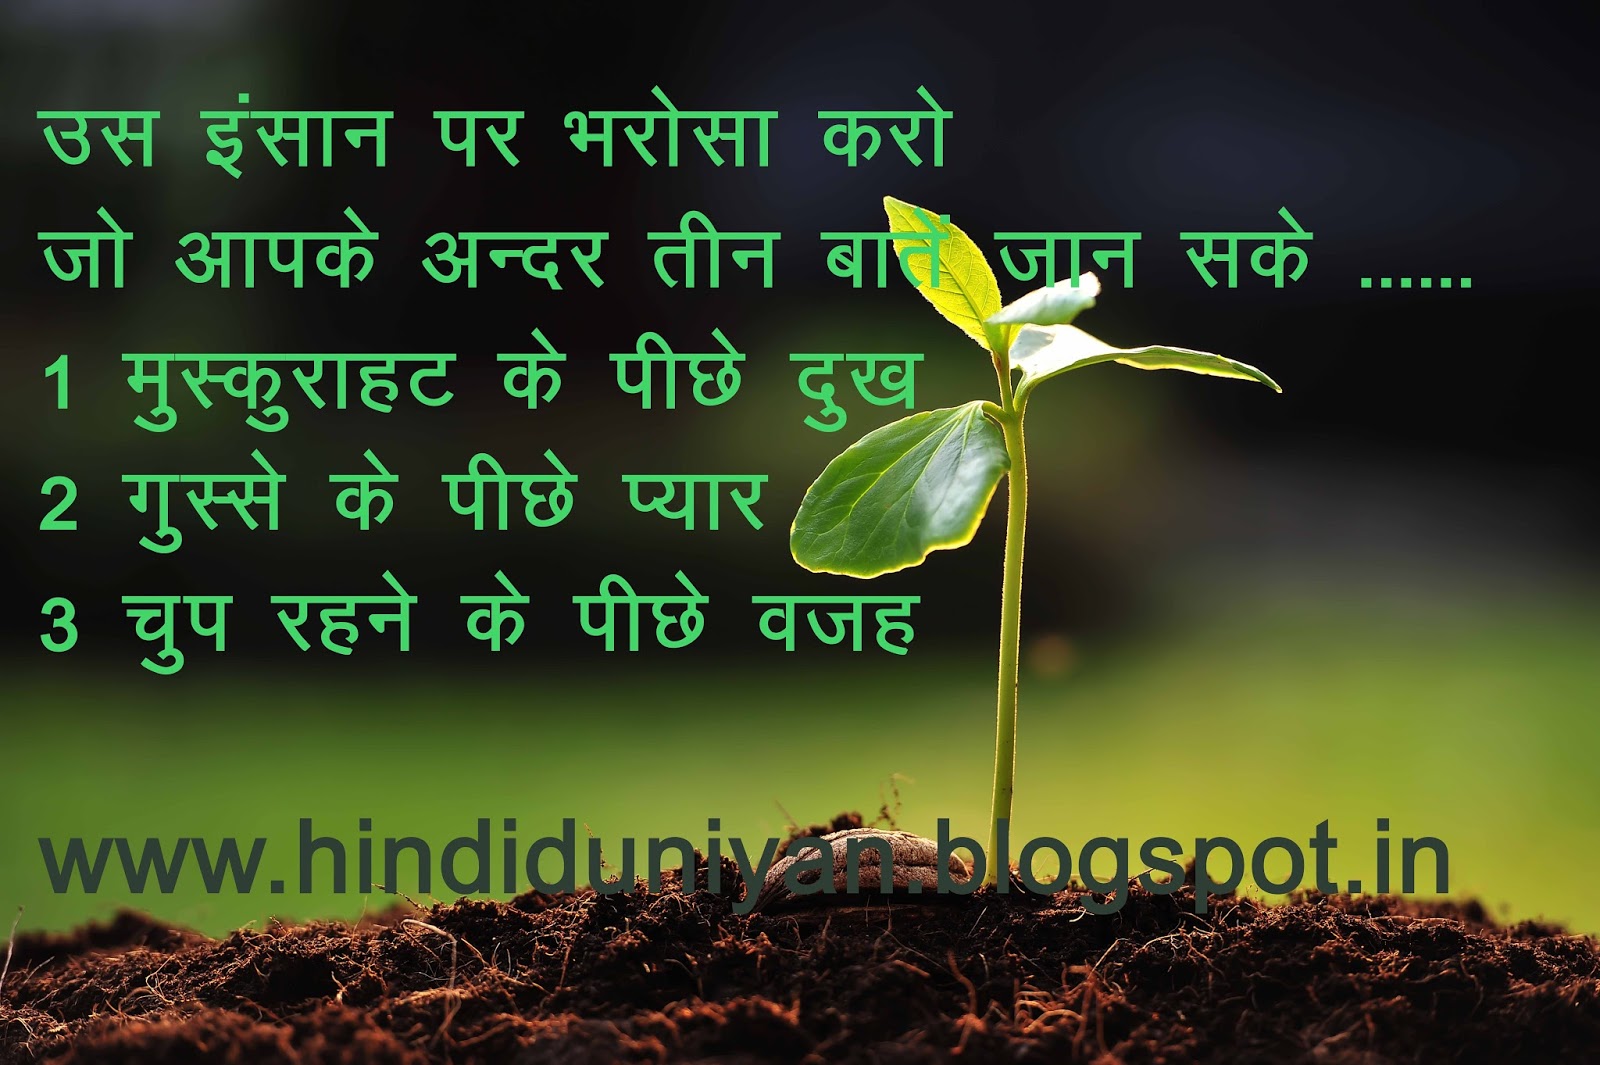 Hindi duniyan: hindi life quotes - उस इंसान पर भरोसा करो